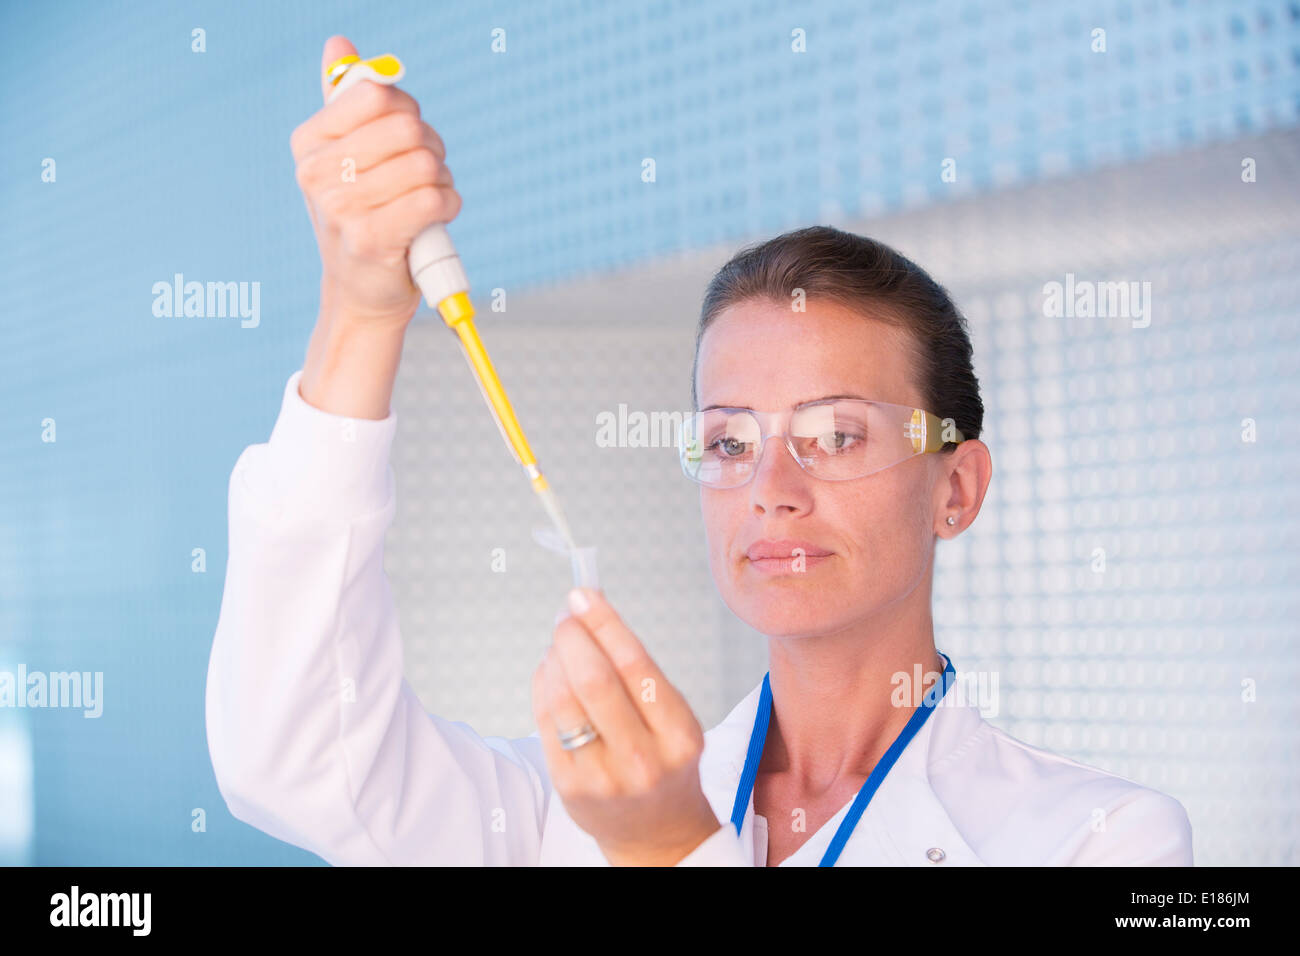 Scientist using pipette Stock Photo